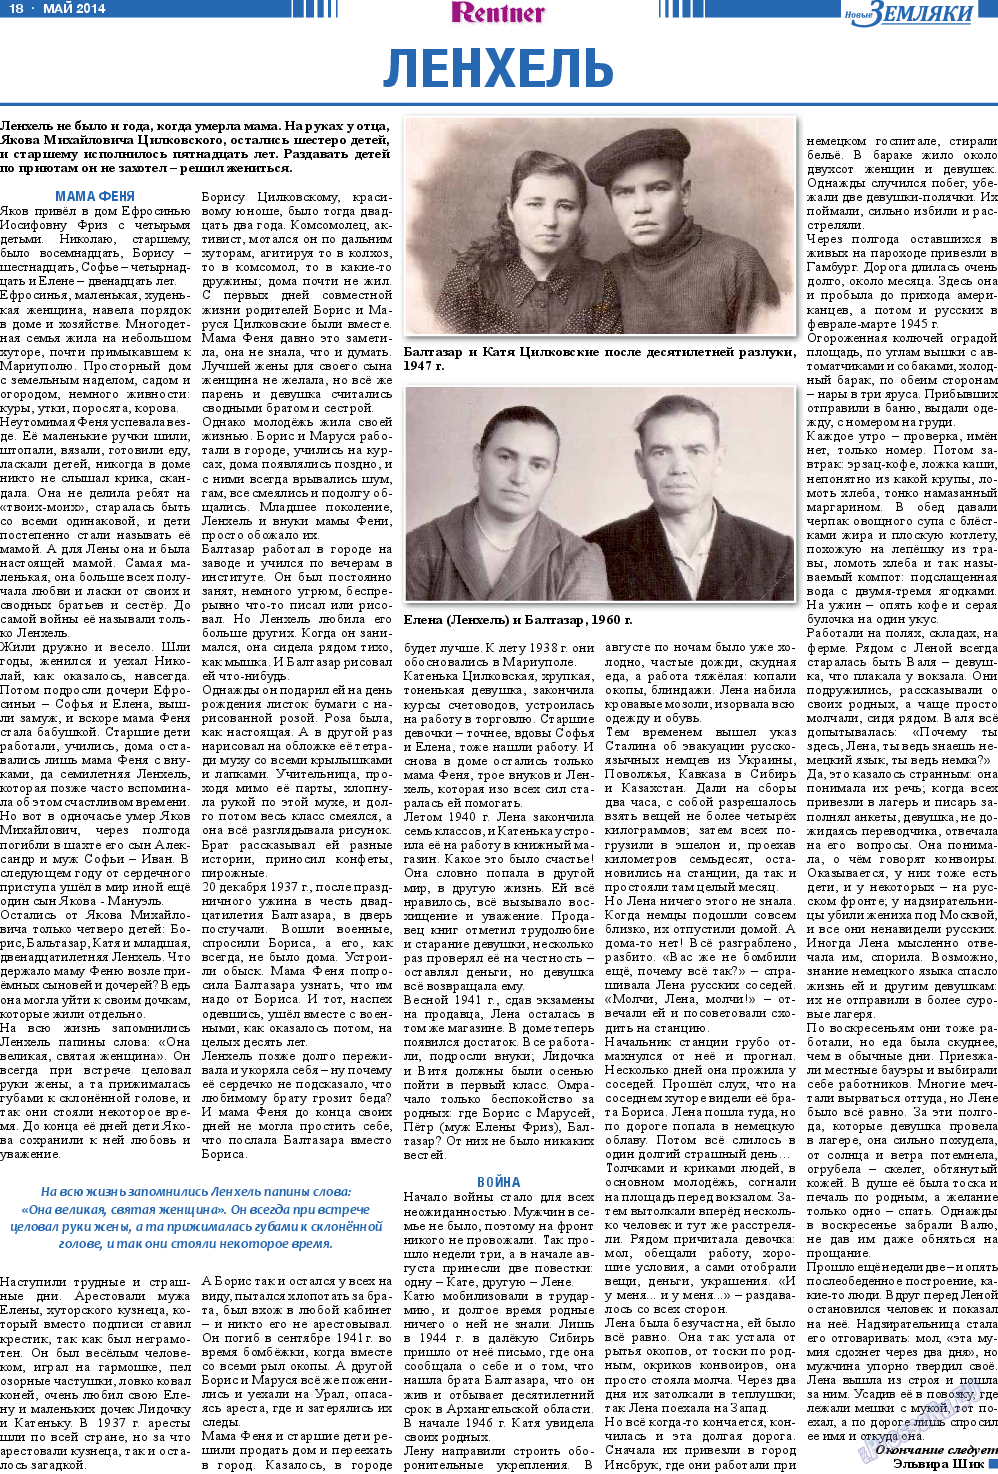 Новые Земляки, газета. 2014 №5 стр.18